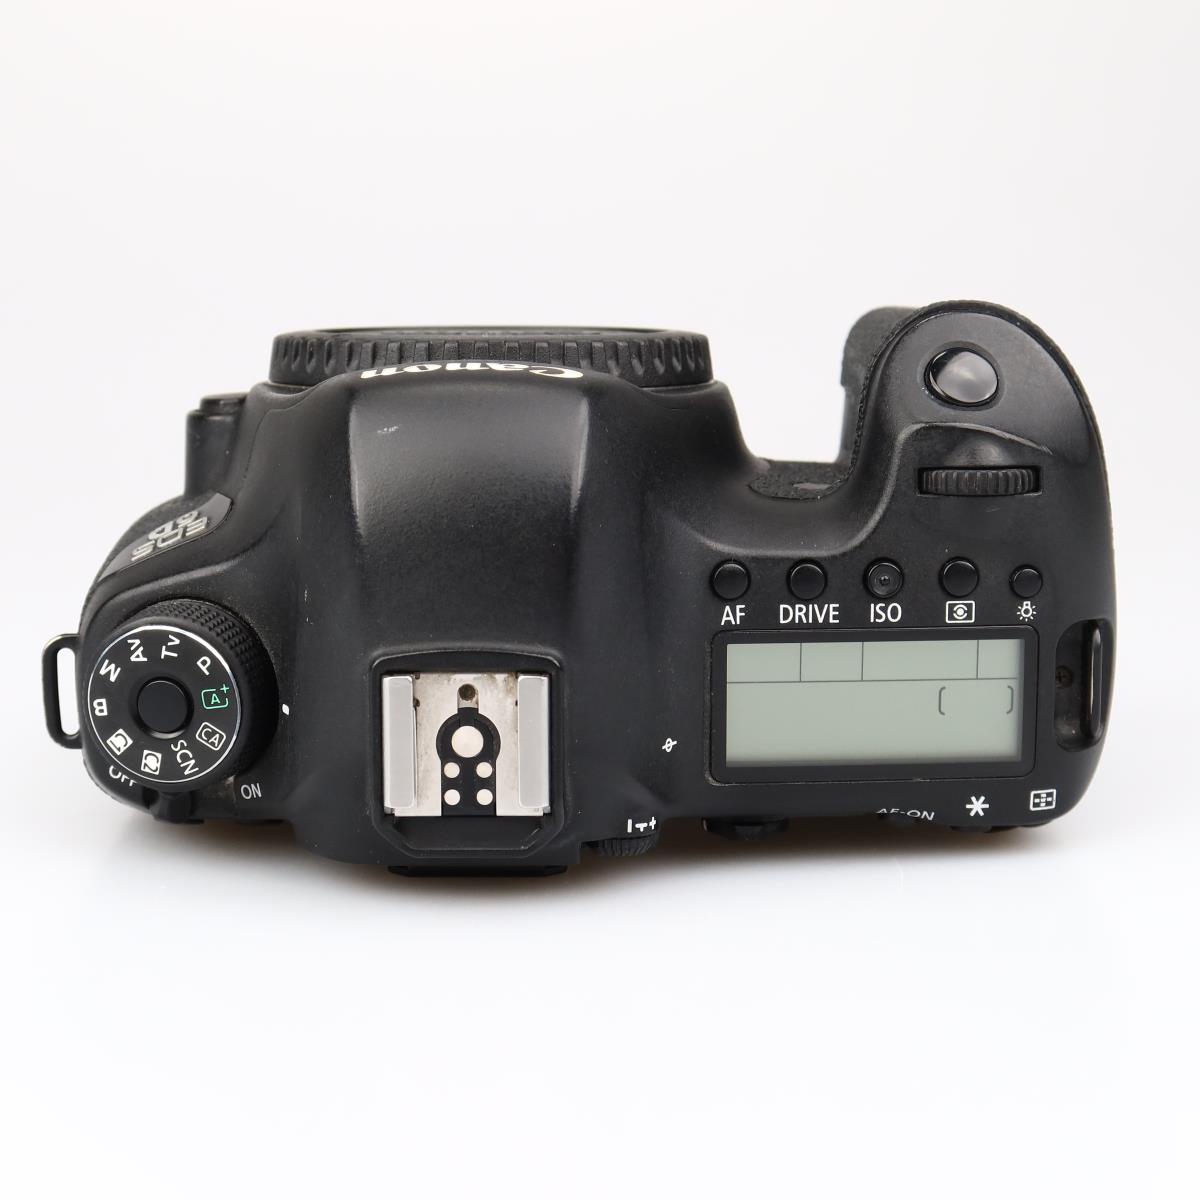 (myyty) Canon EOS 6D runko (SC 43292) (käytetty)